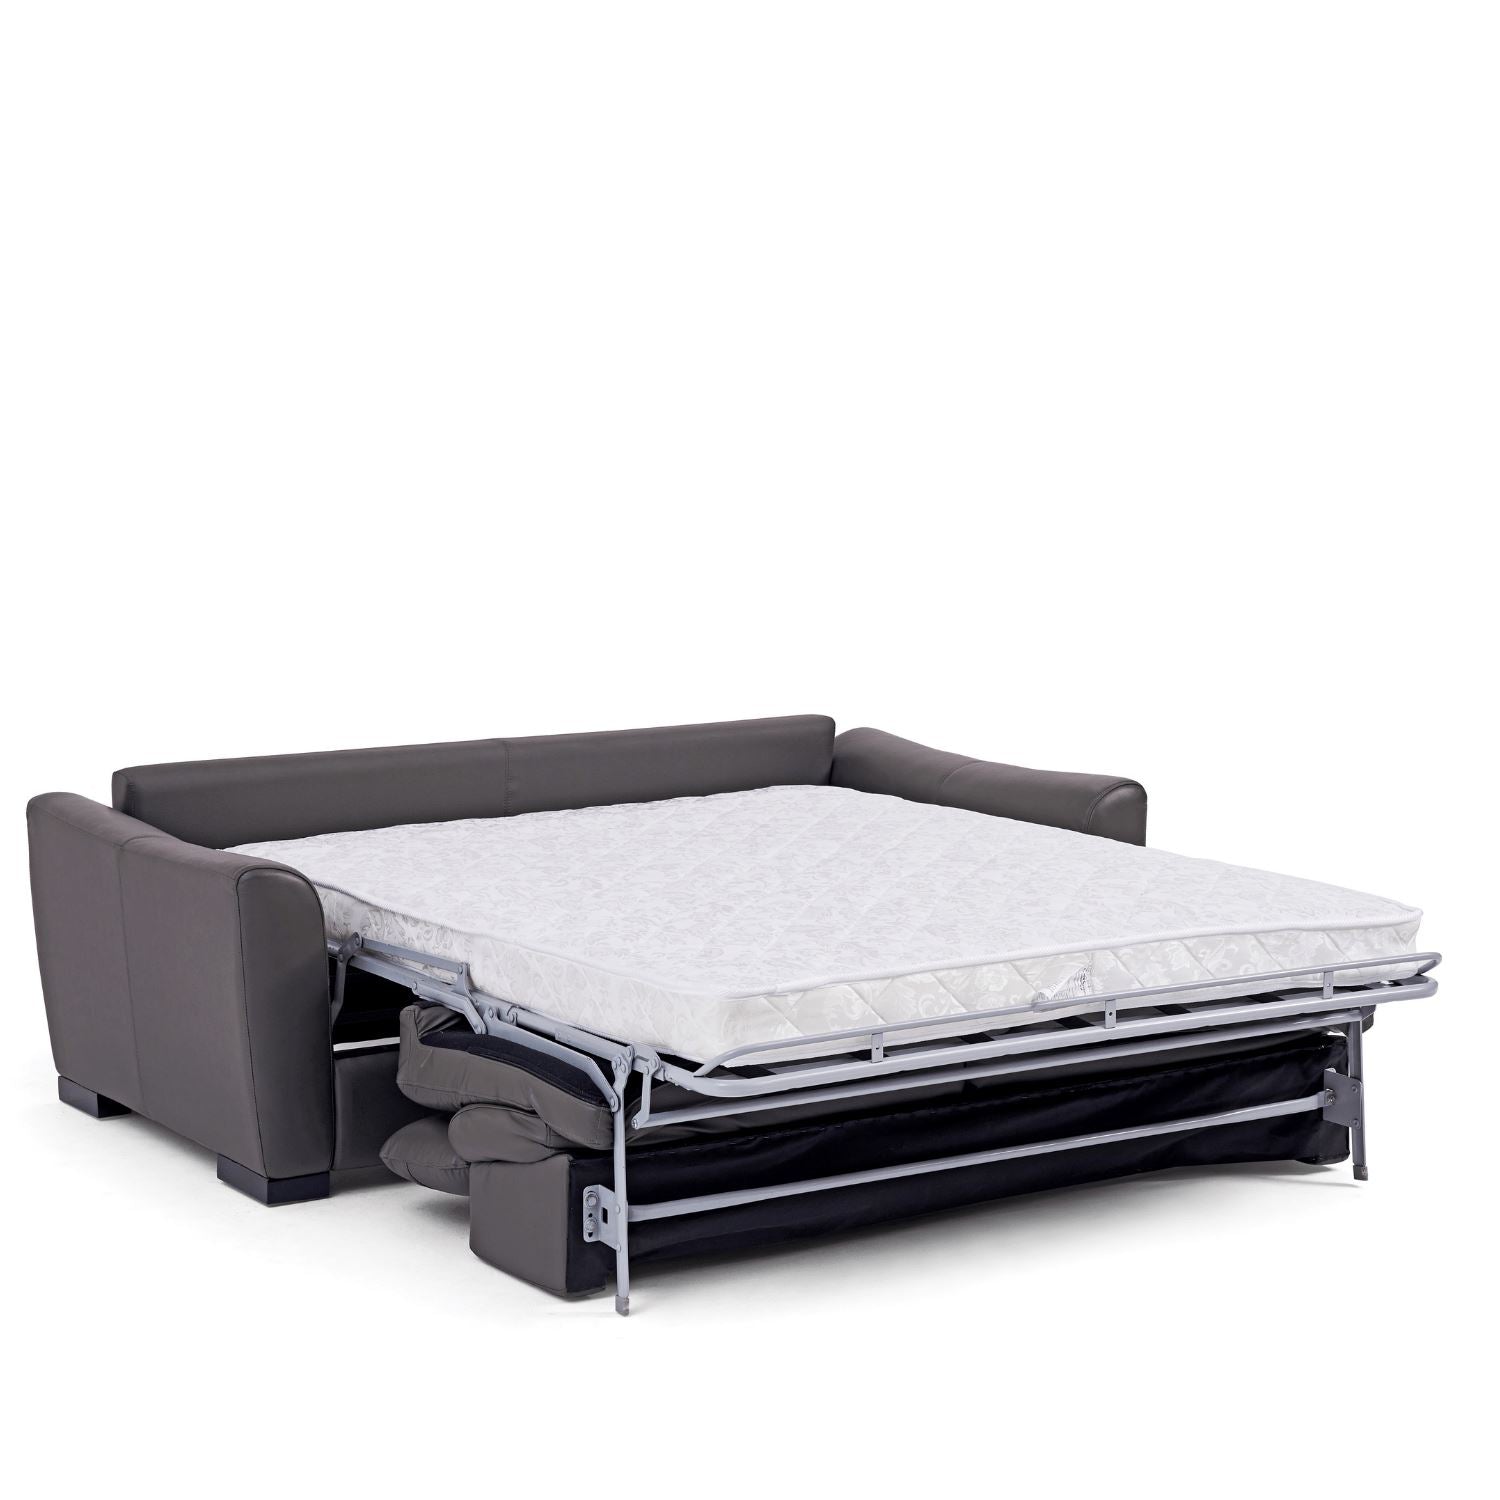 Spazio Mini Sofa Bed - Valyou 